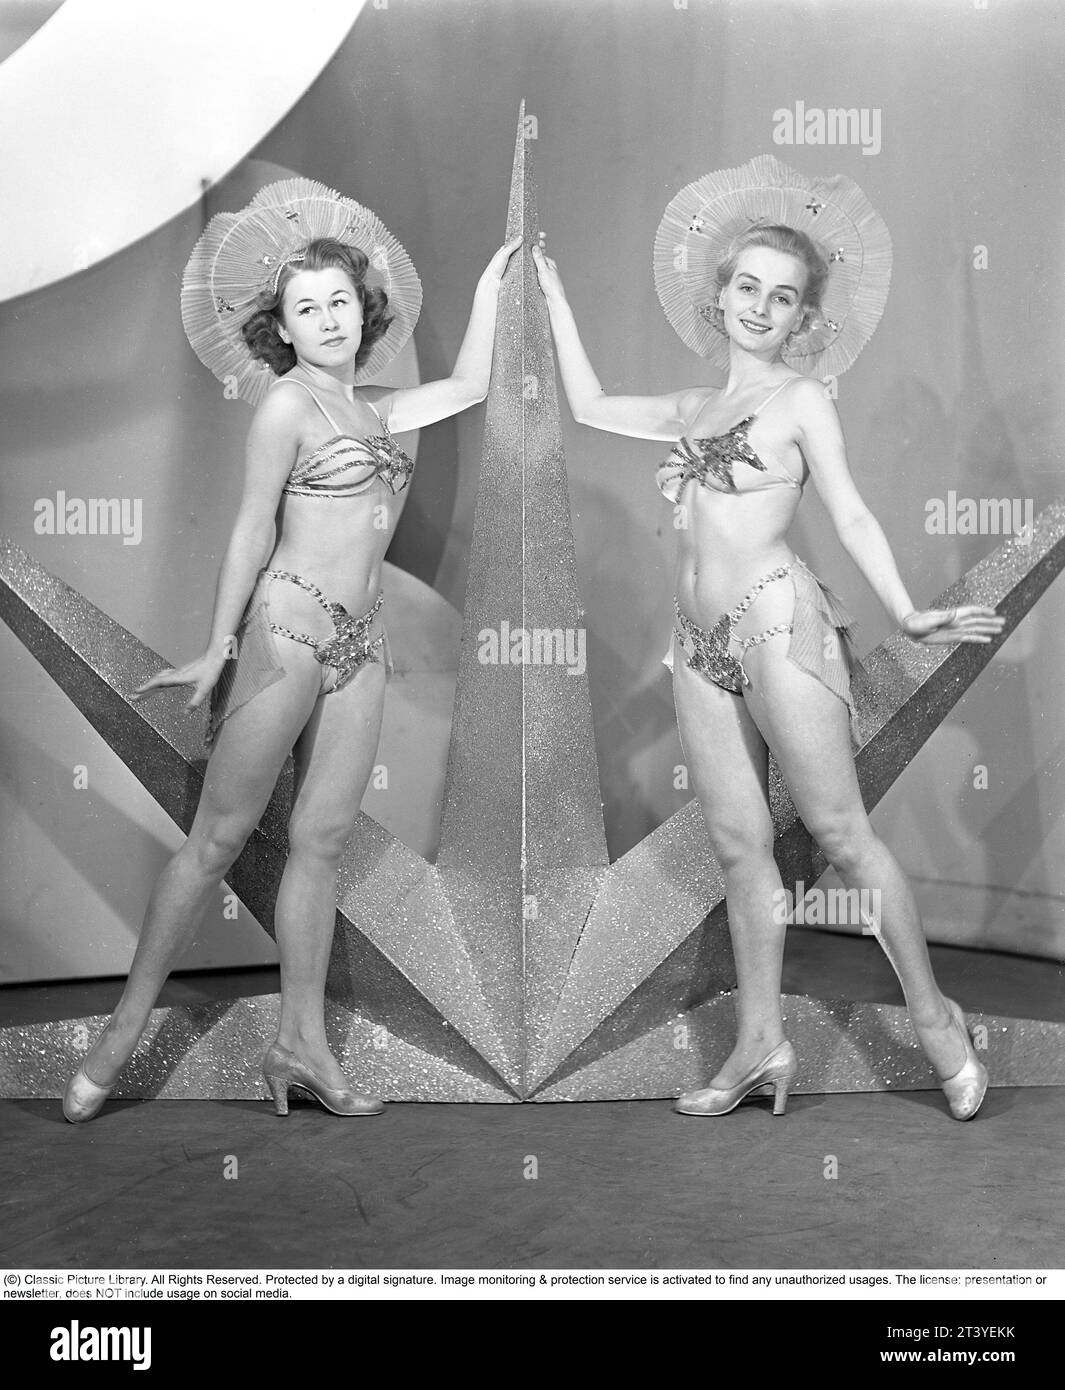 In den 1940er Jahren Zwei junge Frauen aus dem Theaterensemble der Södra teatern in Stockholm sind in Bühnenkleidung gekleidet, ähnlich wie ein Bikini, auf der Bühne neben einem Stern, der dort während der Revue-Performance als Dekoration platziert wurde. Schweden 1945. Kristoffersson Ref. 89A-11 Stockfoto